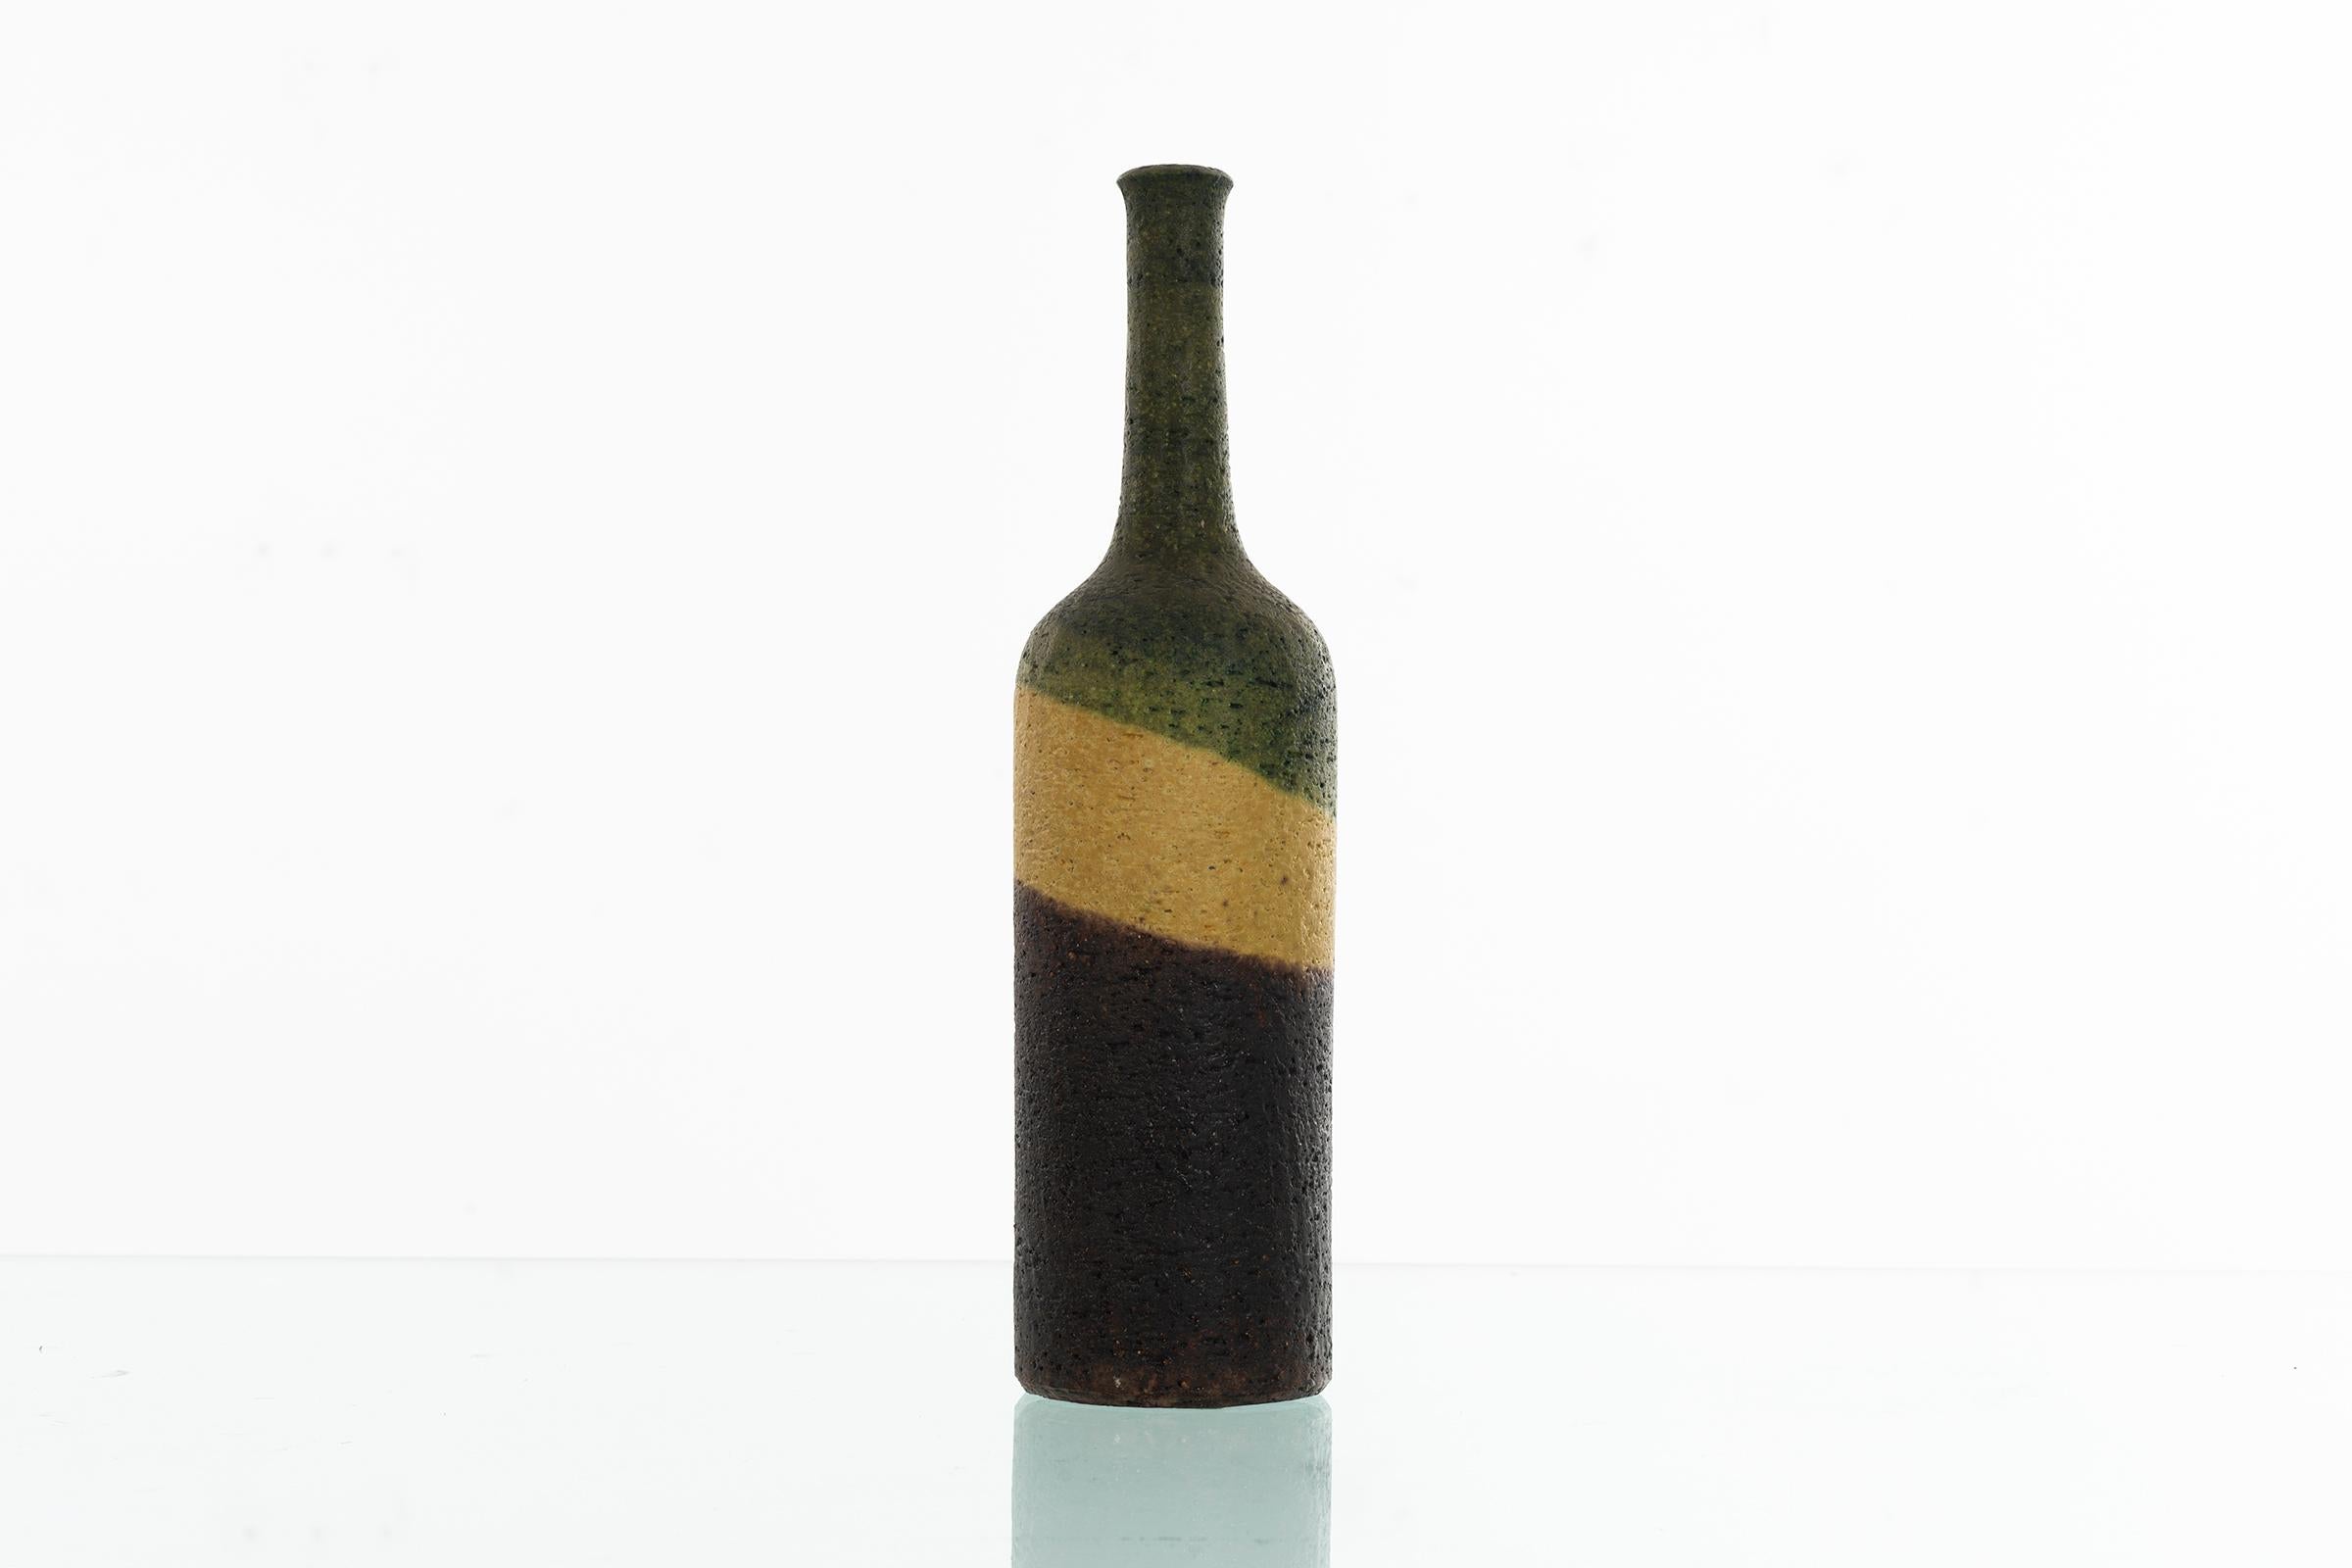 Marcello Fantoni for Raymor tricolor glazed vase.